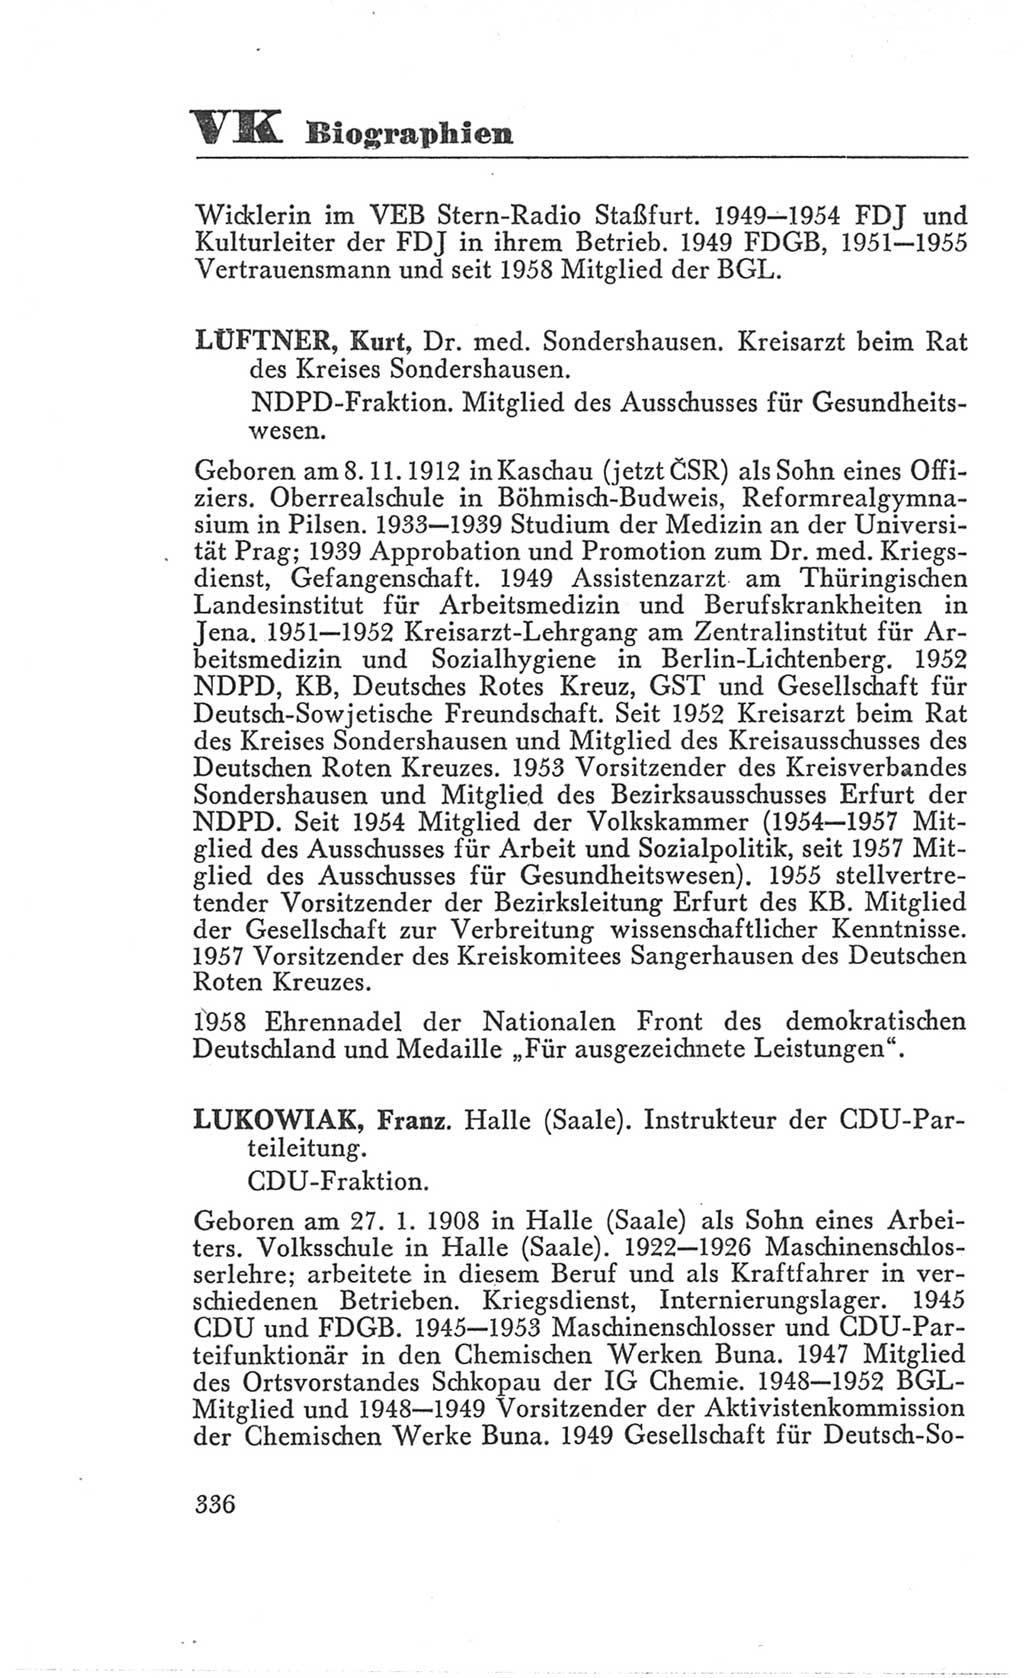 Handbuch der Volkskammer (VK) der Deutschen Demokratischen Republik (DDR), 3. Wahlperiode 1958-1963, Seite 336 (Hdb. VK. DDR 3. WP. 1958-1963, S. 336)